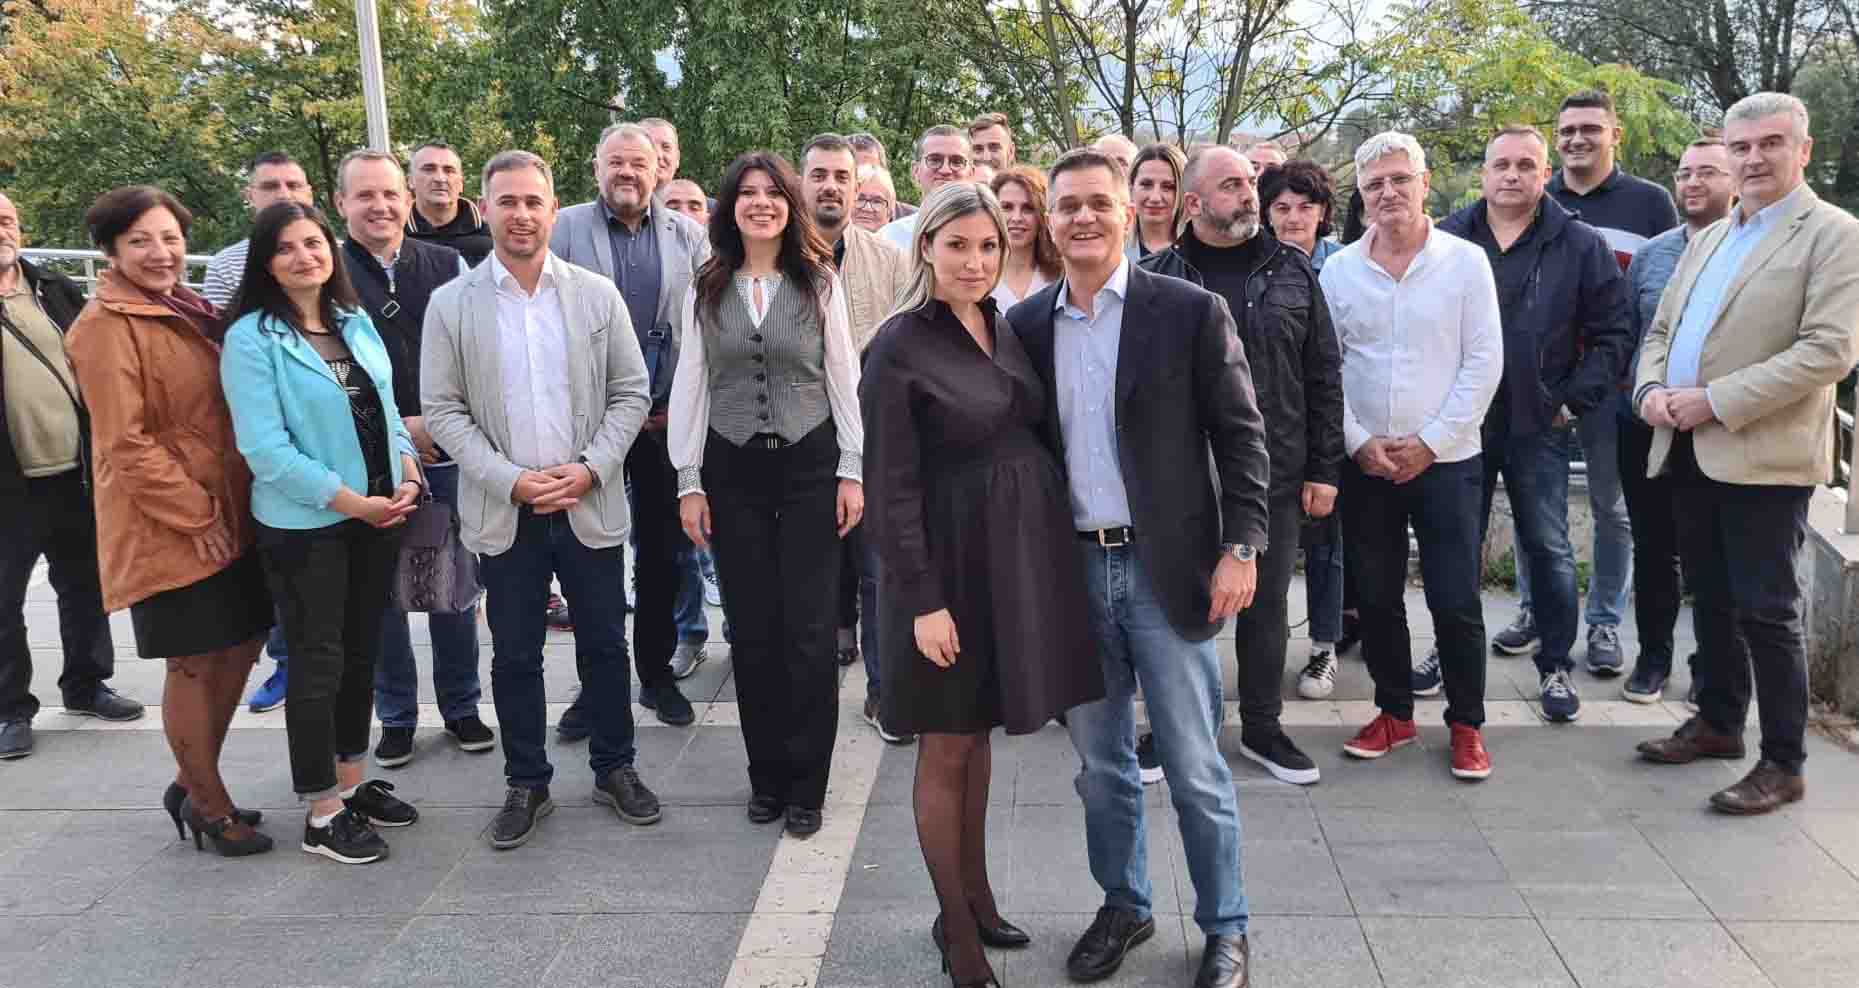 Краљево: Одржана изборна скупштина Градског одбора Народне странке, Катарина Јовић изабрана за председницу